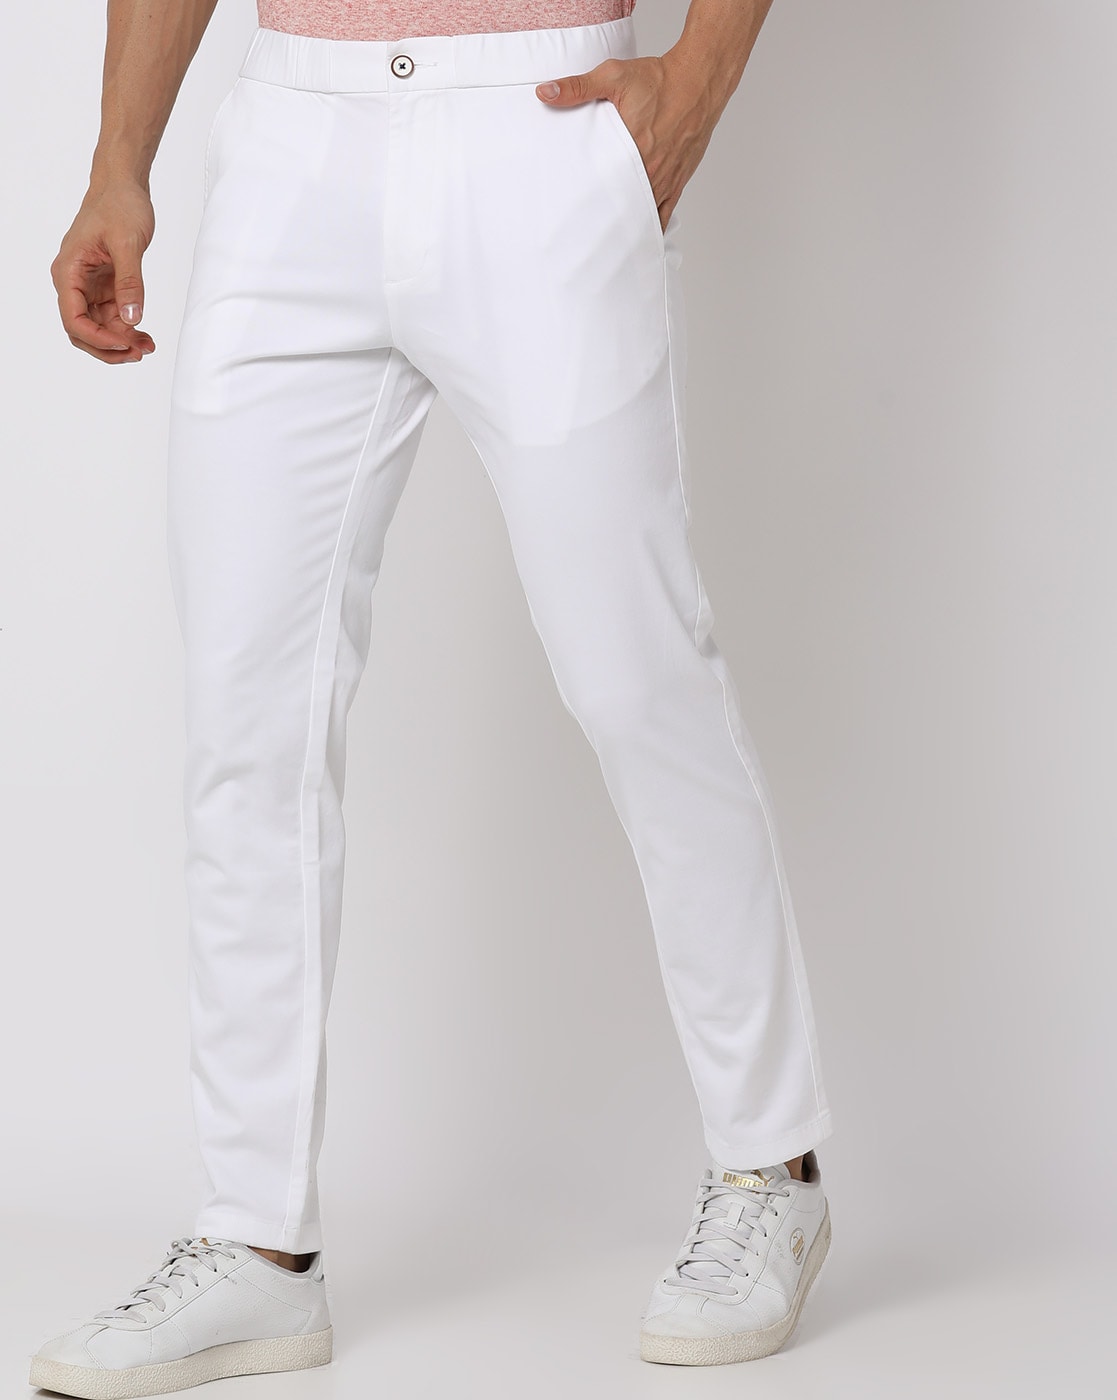 Formal Women's Pants & Trousers - Macy's